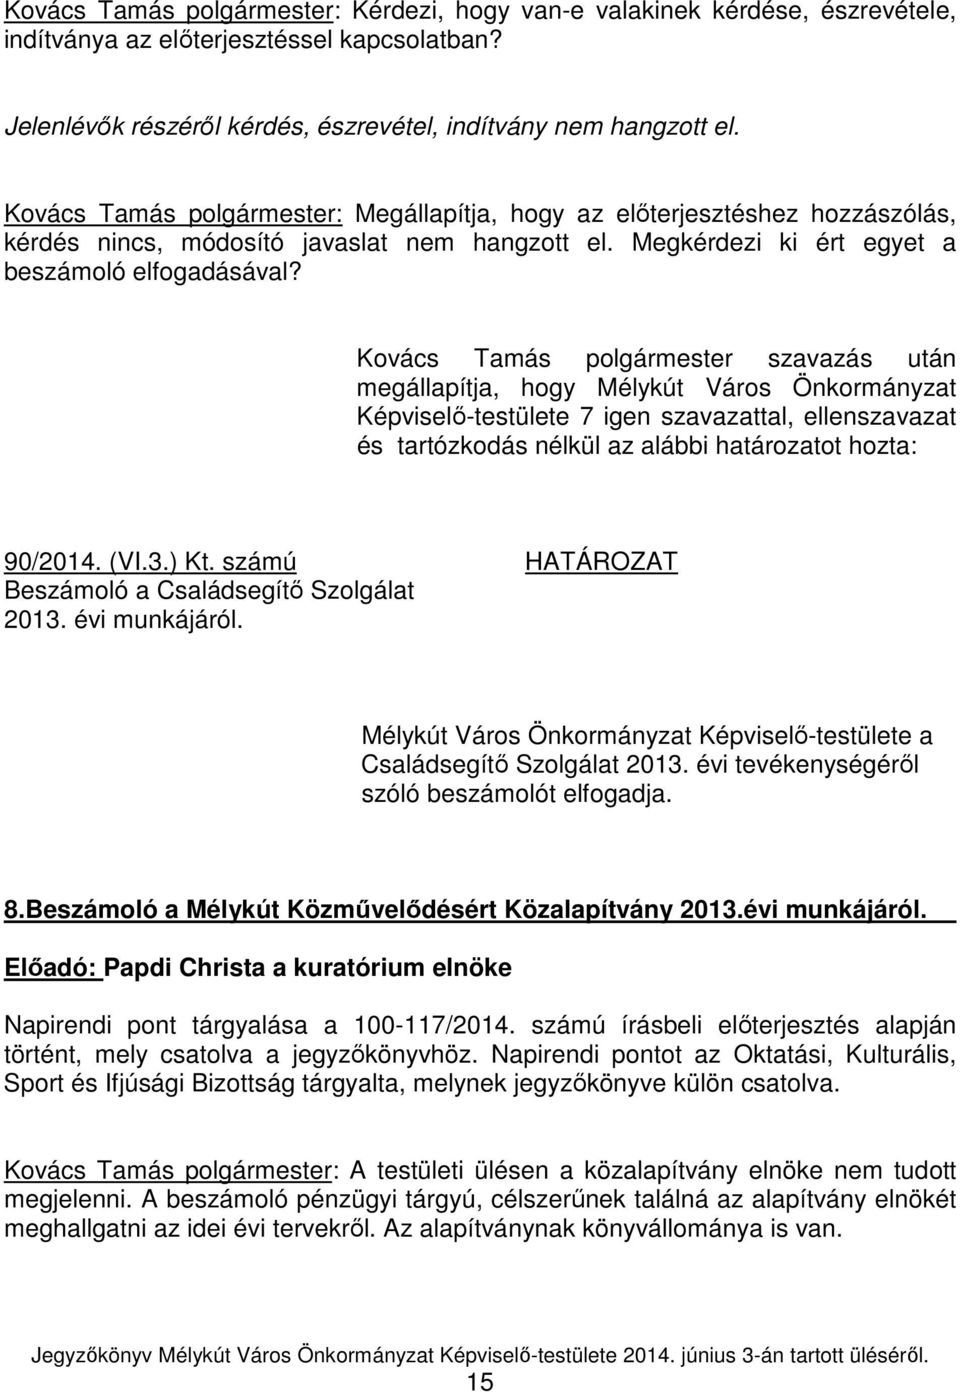 Kovács Tamás polgármester szavazás után Képviselő-testülete 7 igen szavazattal, ellenszavazat 90/2014. (VI.3.) Kt. számú HATÁROZAT Beszámoló a Családsegítő Szolgálat 2013. évi munkájáról.